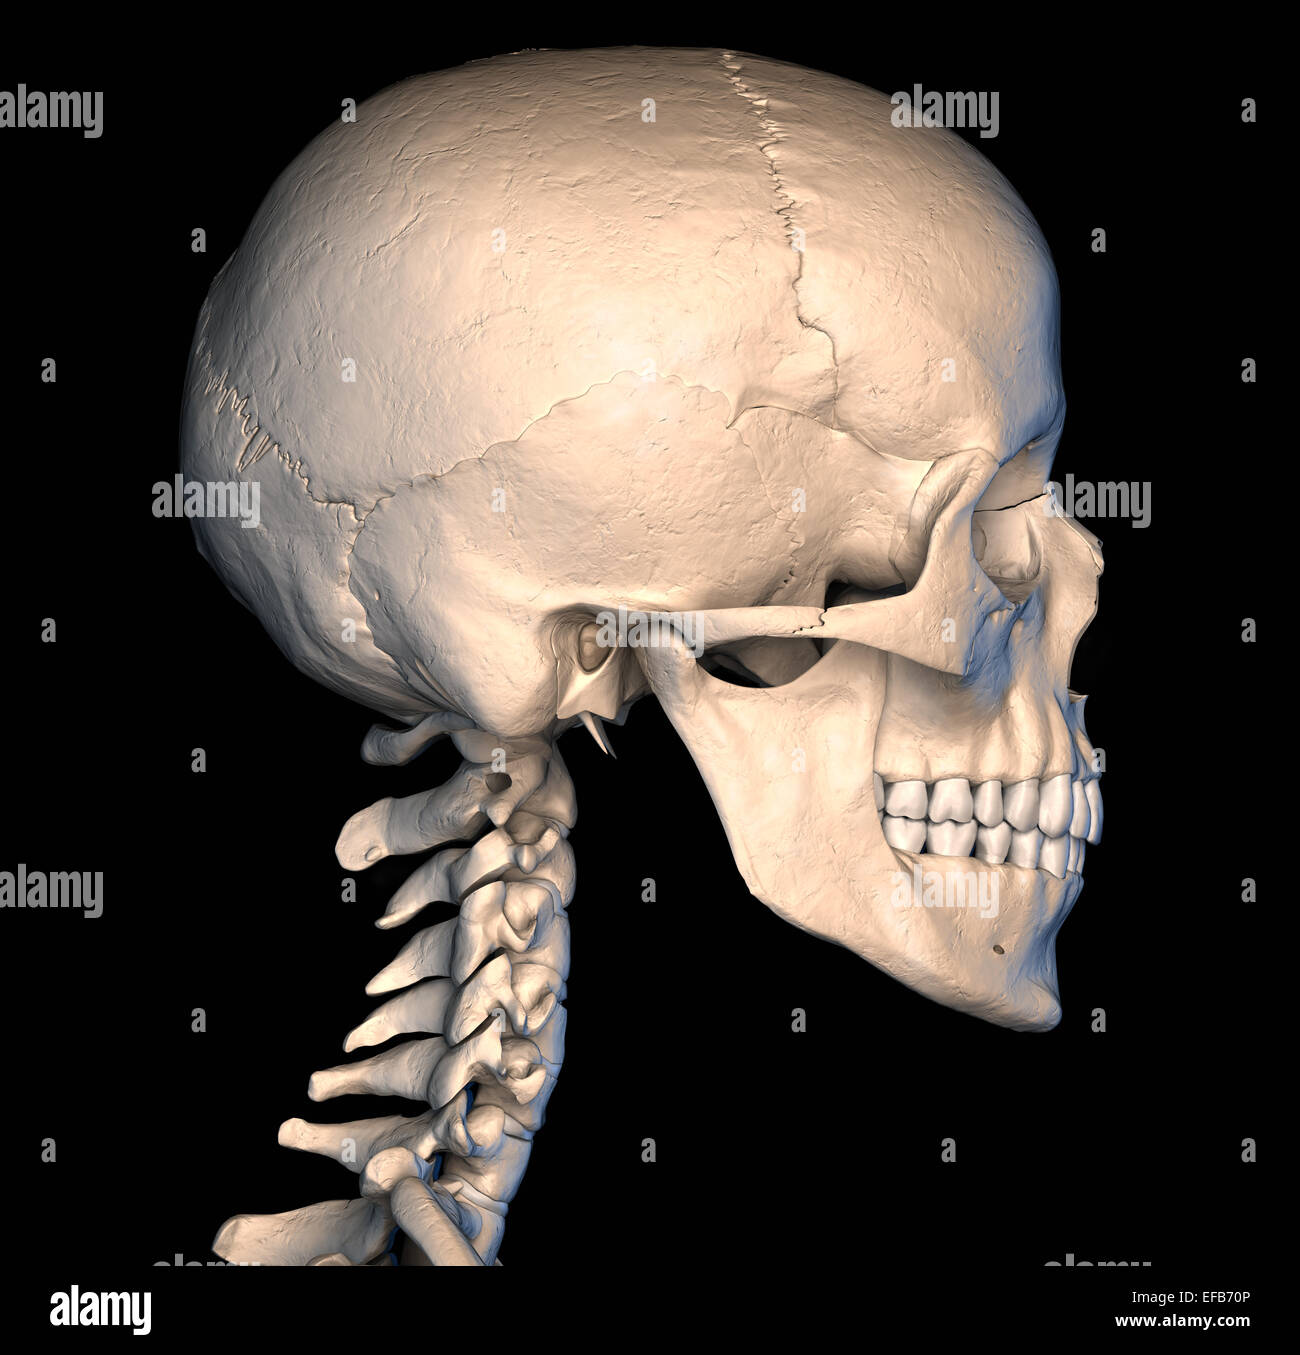 Très détaillé et scientifiquement correctes crâne humain. Vue latérale, sur fond noir. Anatomie de l'image. Banque D'Images